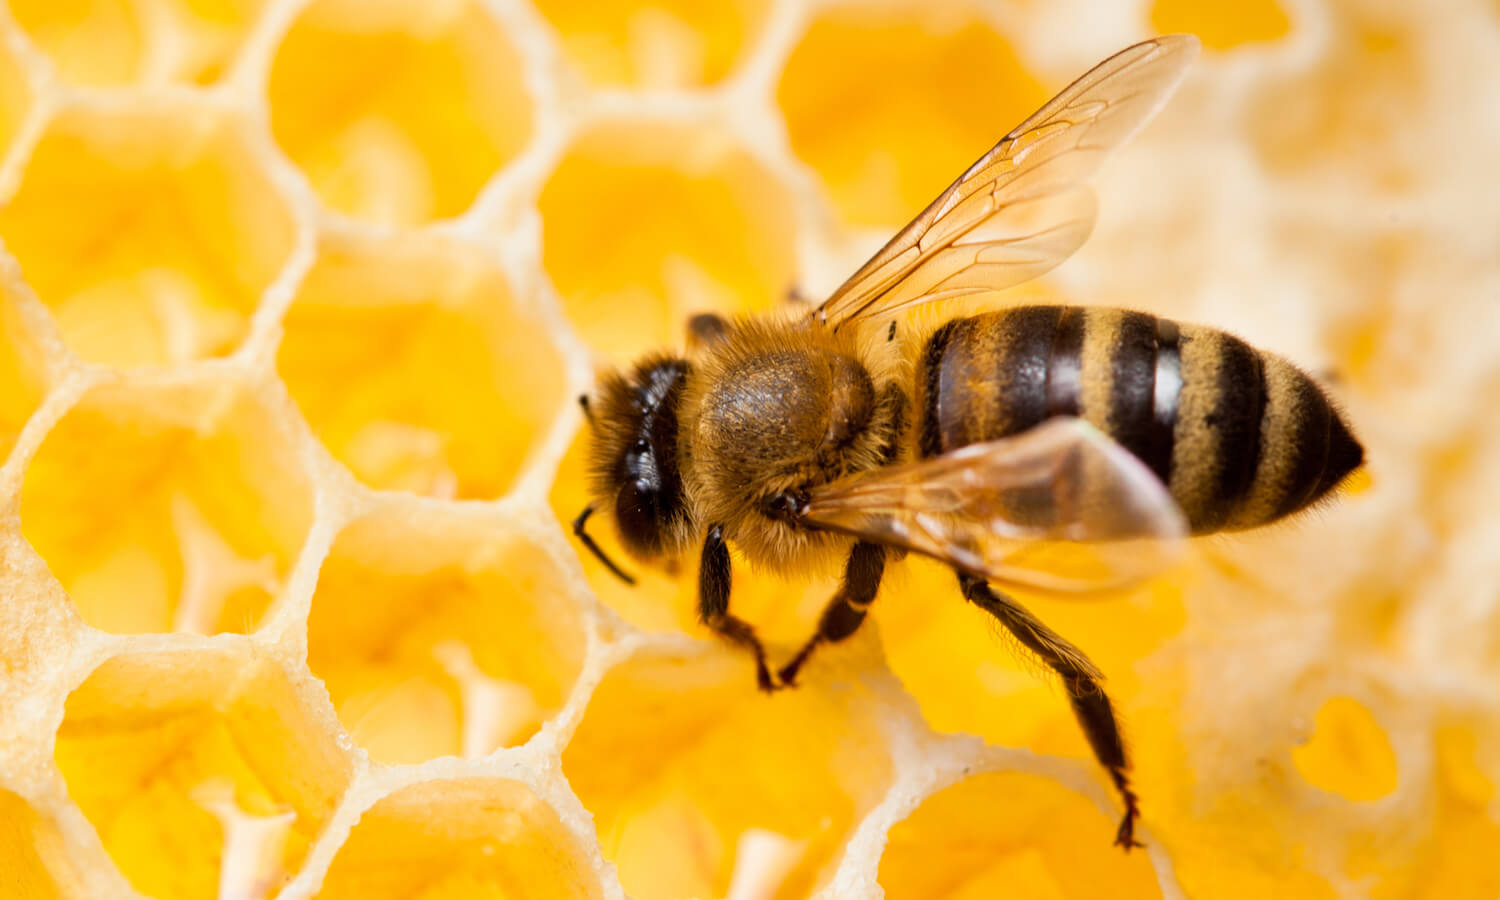 Bee macro shot collecting honey in honeycomb